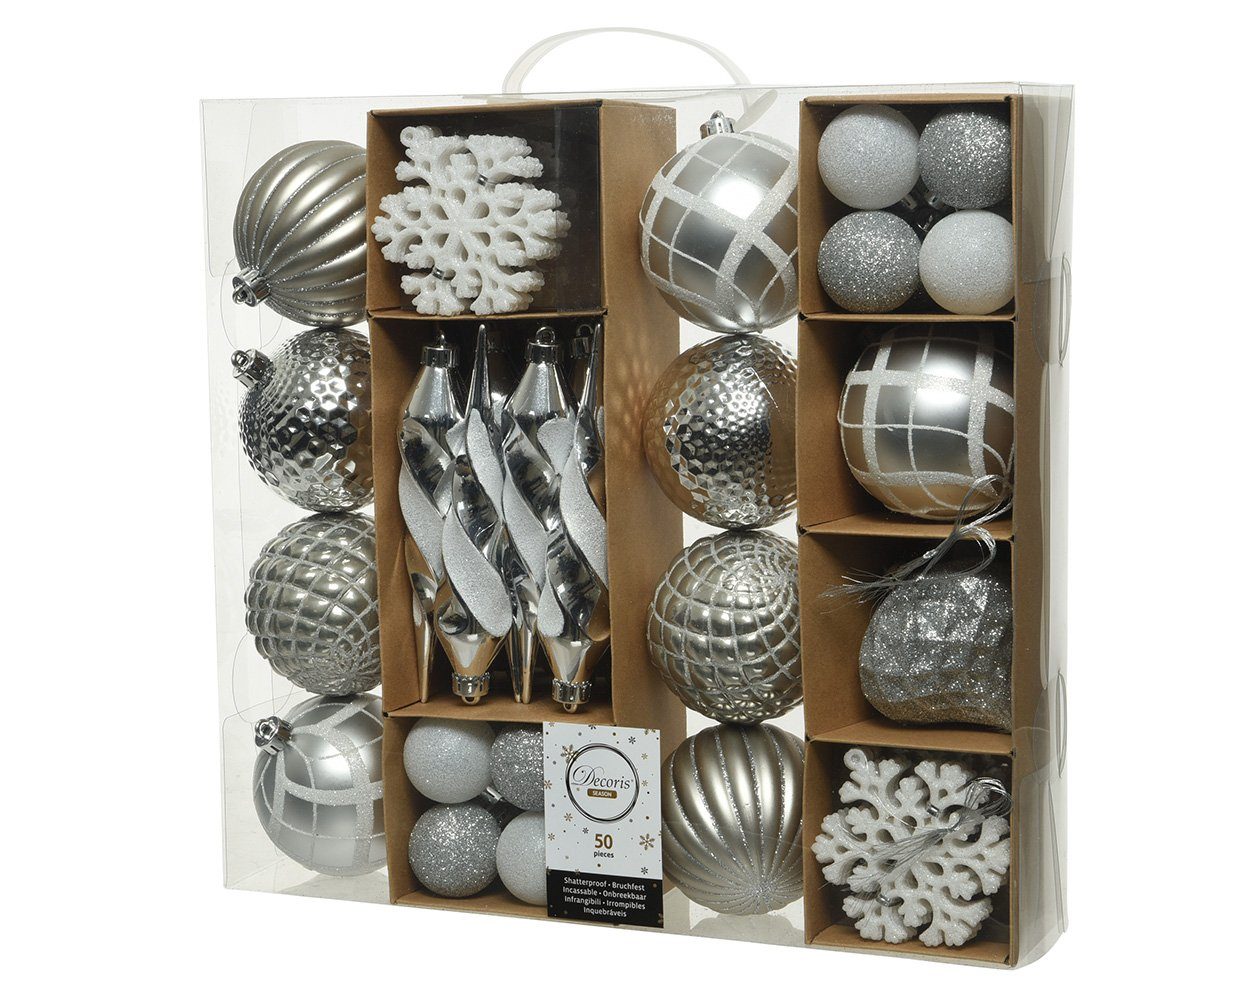 Decoris season decorations Christbaumschmuck, Weihnachtskugeln Kunststoff mit Eiszapfen 4-8cm silber, 50er Set